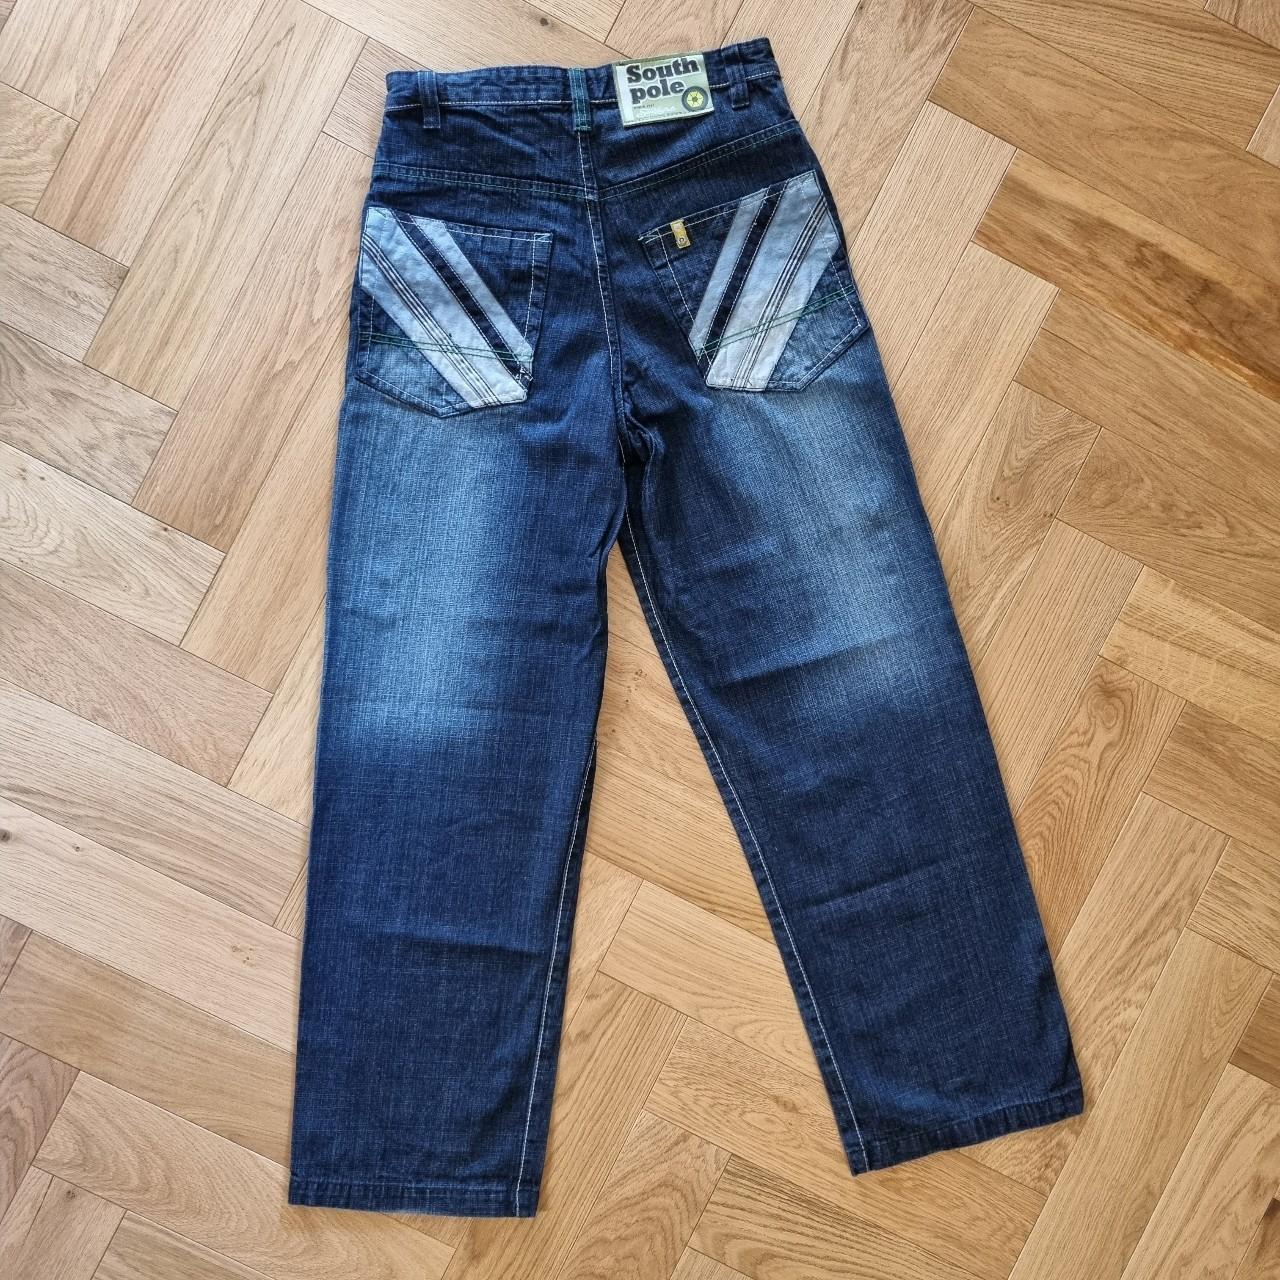 South Pole Denim Jeans - Y2K baggy Hip-Hop/Skater... - Depop